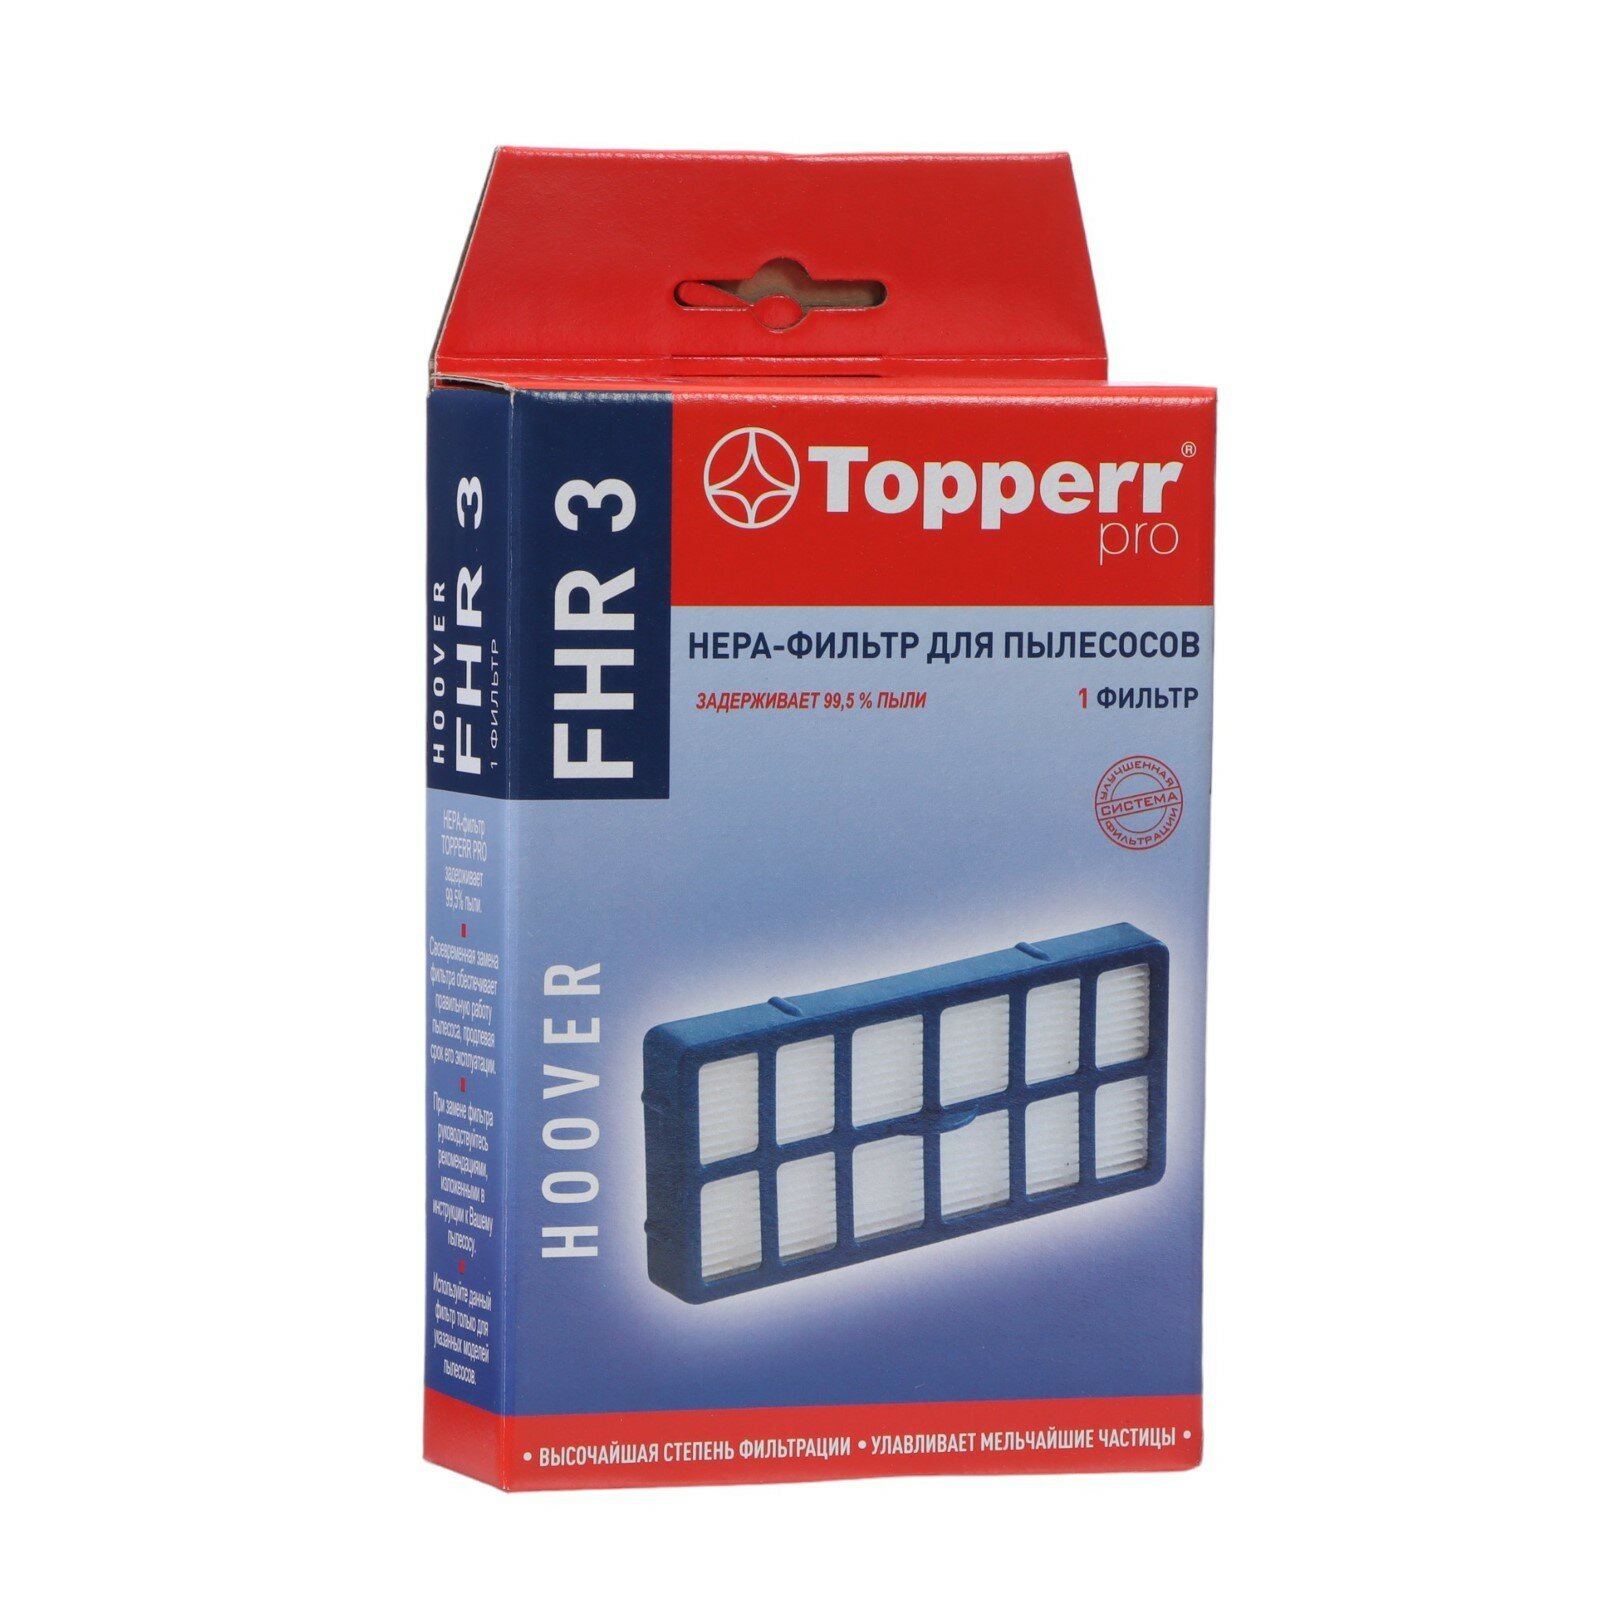 Hepa-фильтр FHR 3 для пылесосов Hoover